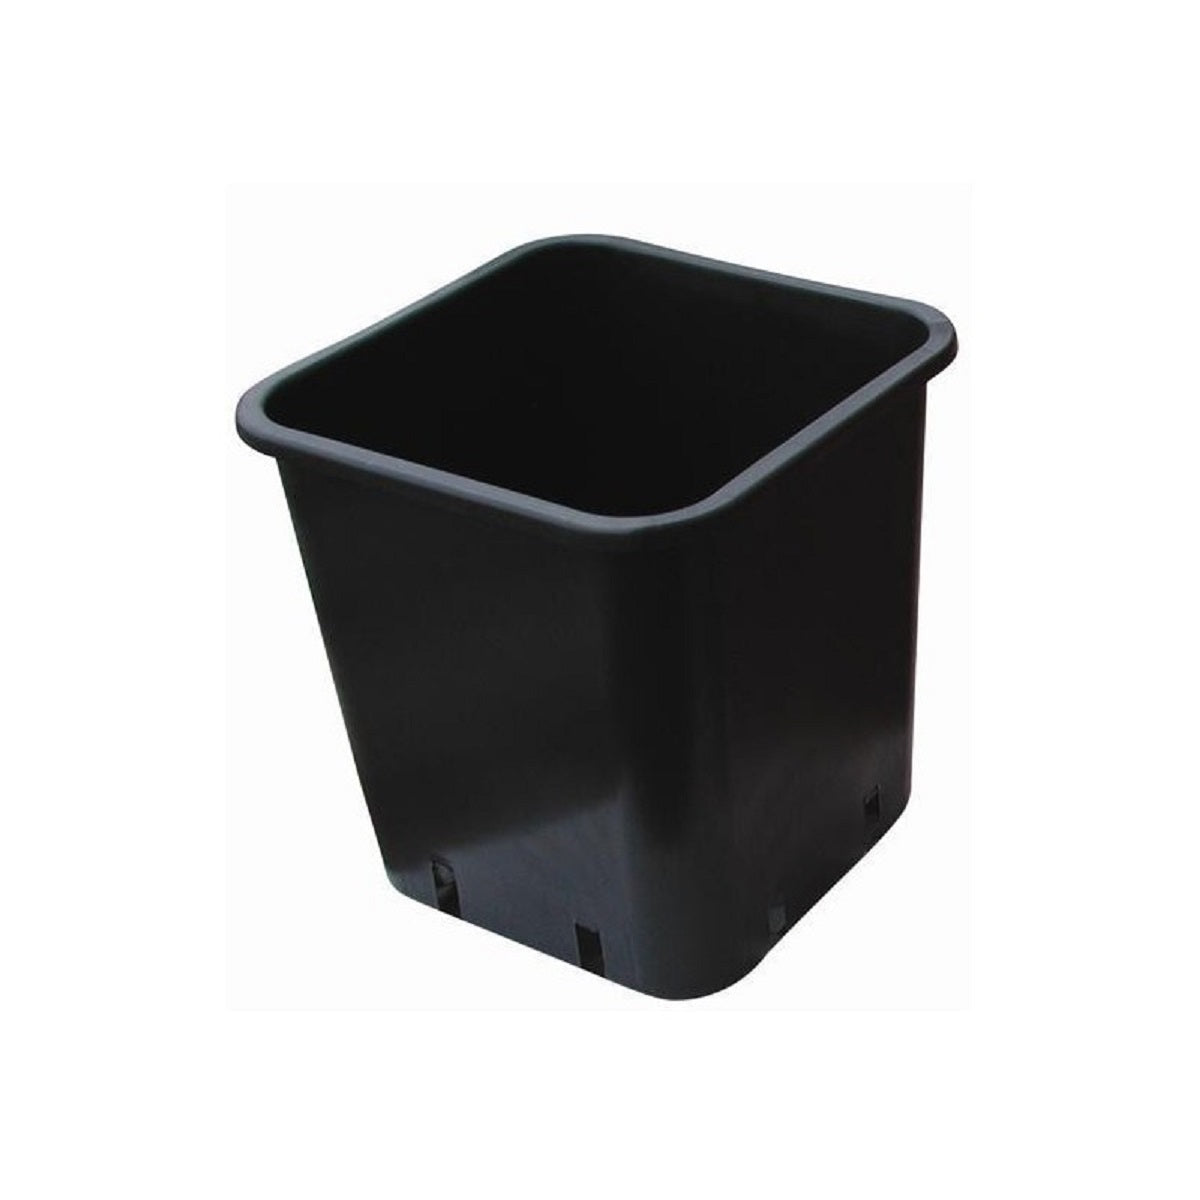 Le pot de culture indoor et outdoor de 25 Litres en plastique noir 